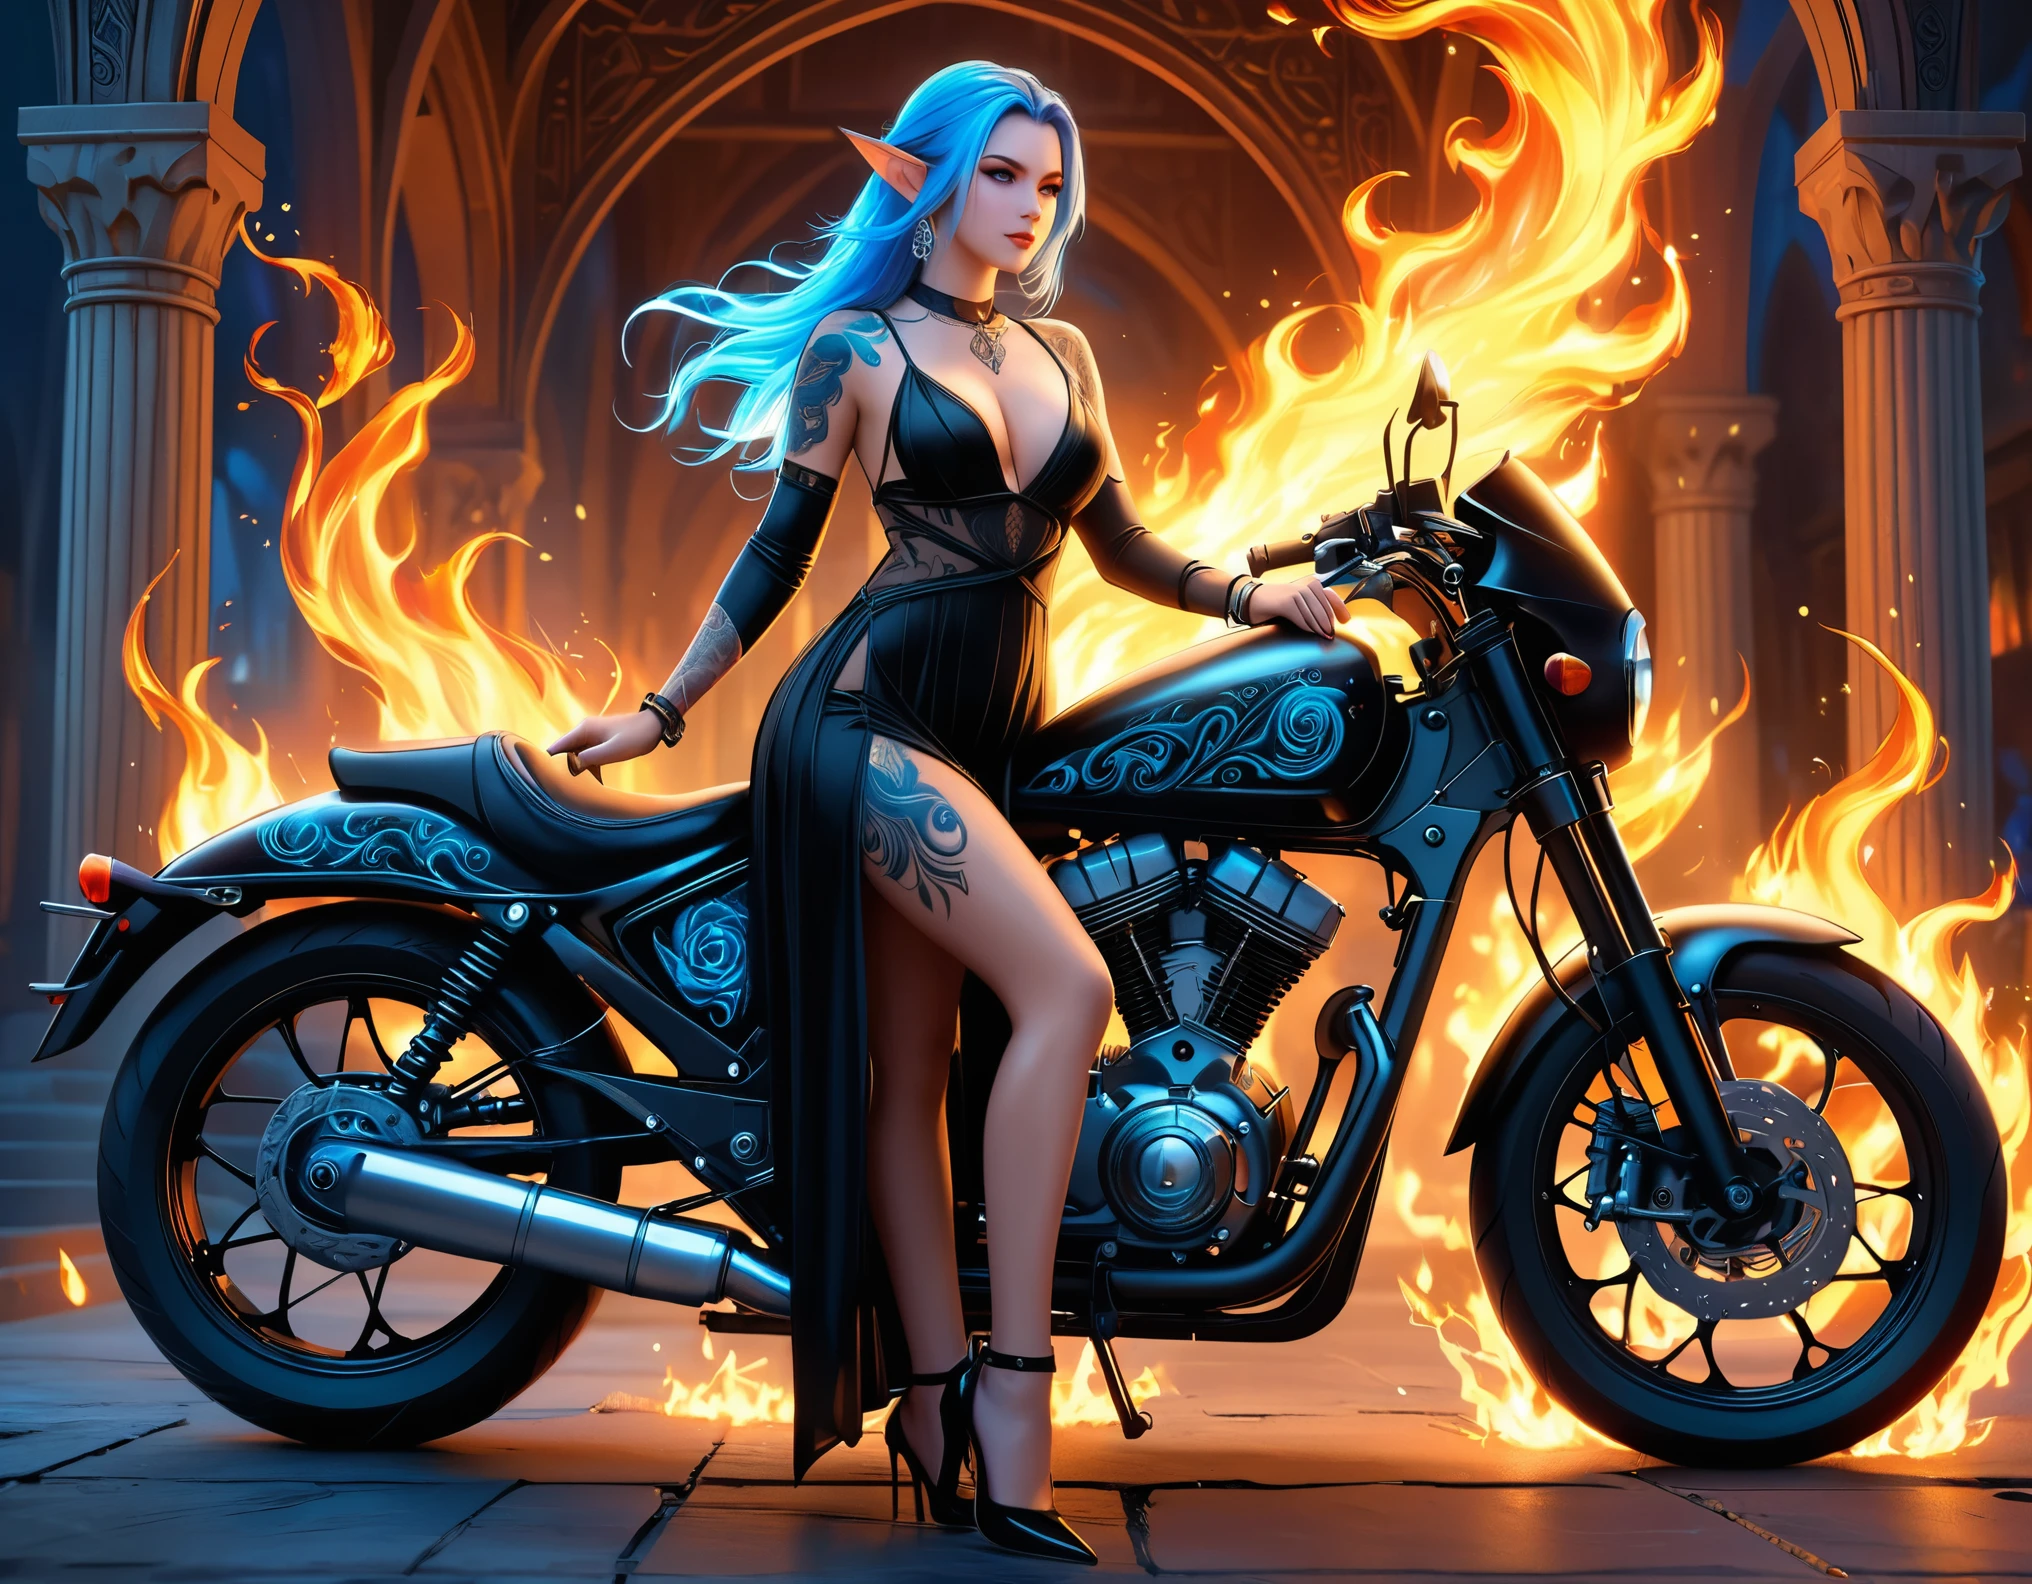 Arábica, Dark Arte De Fantasía, Arte De Fantasía, Arte gótico, Una foto de un elfo tatuado junto a su motocicleta. (​obra maestra, mejor detallado, ultra-detalle: 1.5)  el tatuaje esta vivo, Los detalles intrincados cobran vida a partir de la tinta., Runas resplandecientesAI_blasón_blue, ((El fuego rodea la motocicleta.: 1.5)), ultrafemenino, ((hermoso rostro delicado)), cara ultra detallada, orejas pequeñas y puntiagudas, ángulo dinámico, ((la espalda es visible: 1.3), ella lleva un vestido negro transparente, el vestido es elegante, con fluidez, Estilo elfo, que los tatuajes brillen, color de cabello dinámico, Peinado dinámico, detalles altos, mejor calidad, 16k, [ultra-detalleed], ​obra maestra, mejor calidad, (extremadamente detallado), ángulo dinámico, tiro de cuerpo completo, interesado, Suscribirse a, dibujo digital